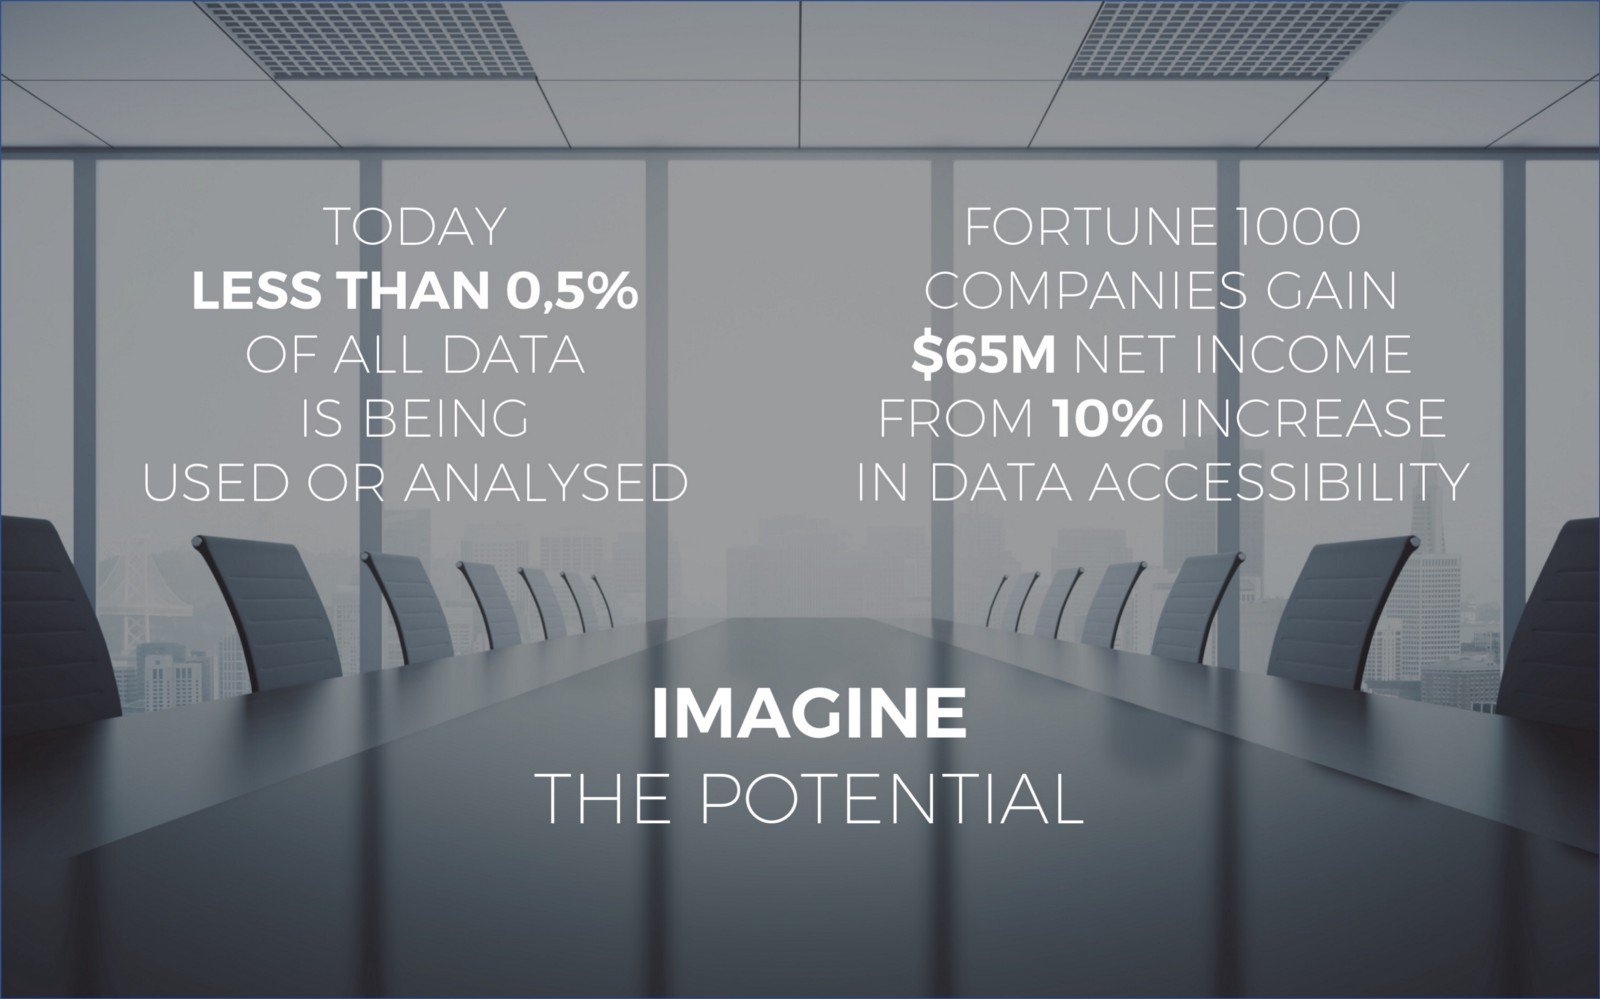 En la actualidad, menos del 0,5% de todos los datos se utilizan o analizan. Las empresas de Fortune 1000 obtienen $65m de ingresos netos gracias al aumento de 10% en la accesibilidad a los datos. Imagine el potencial: Salesflare de ventas.